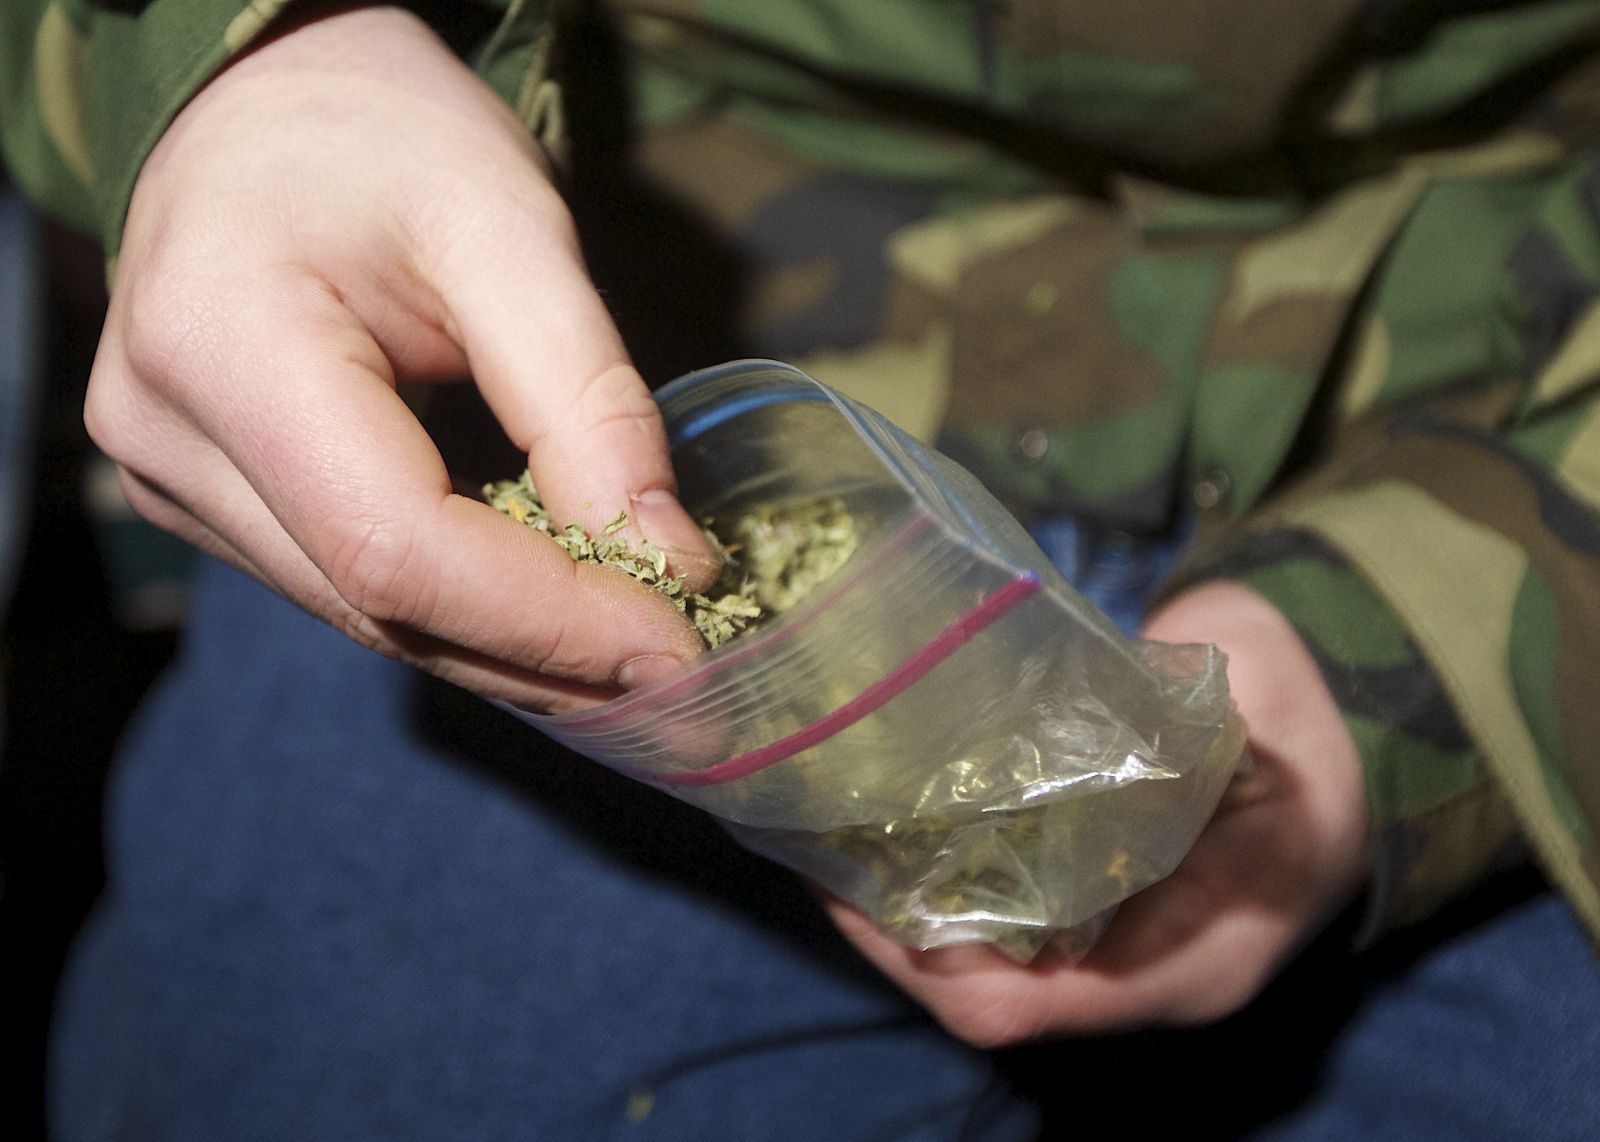 Приехавшие на семейный скандал полицейские обнаружили спрятанную марихуану